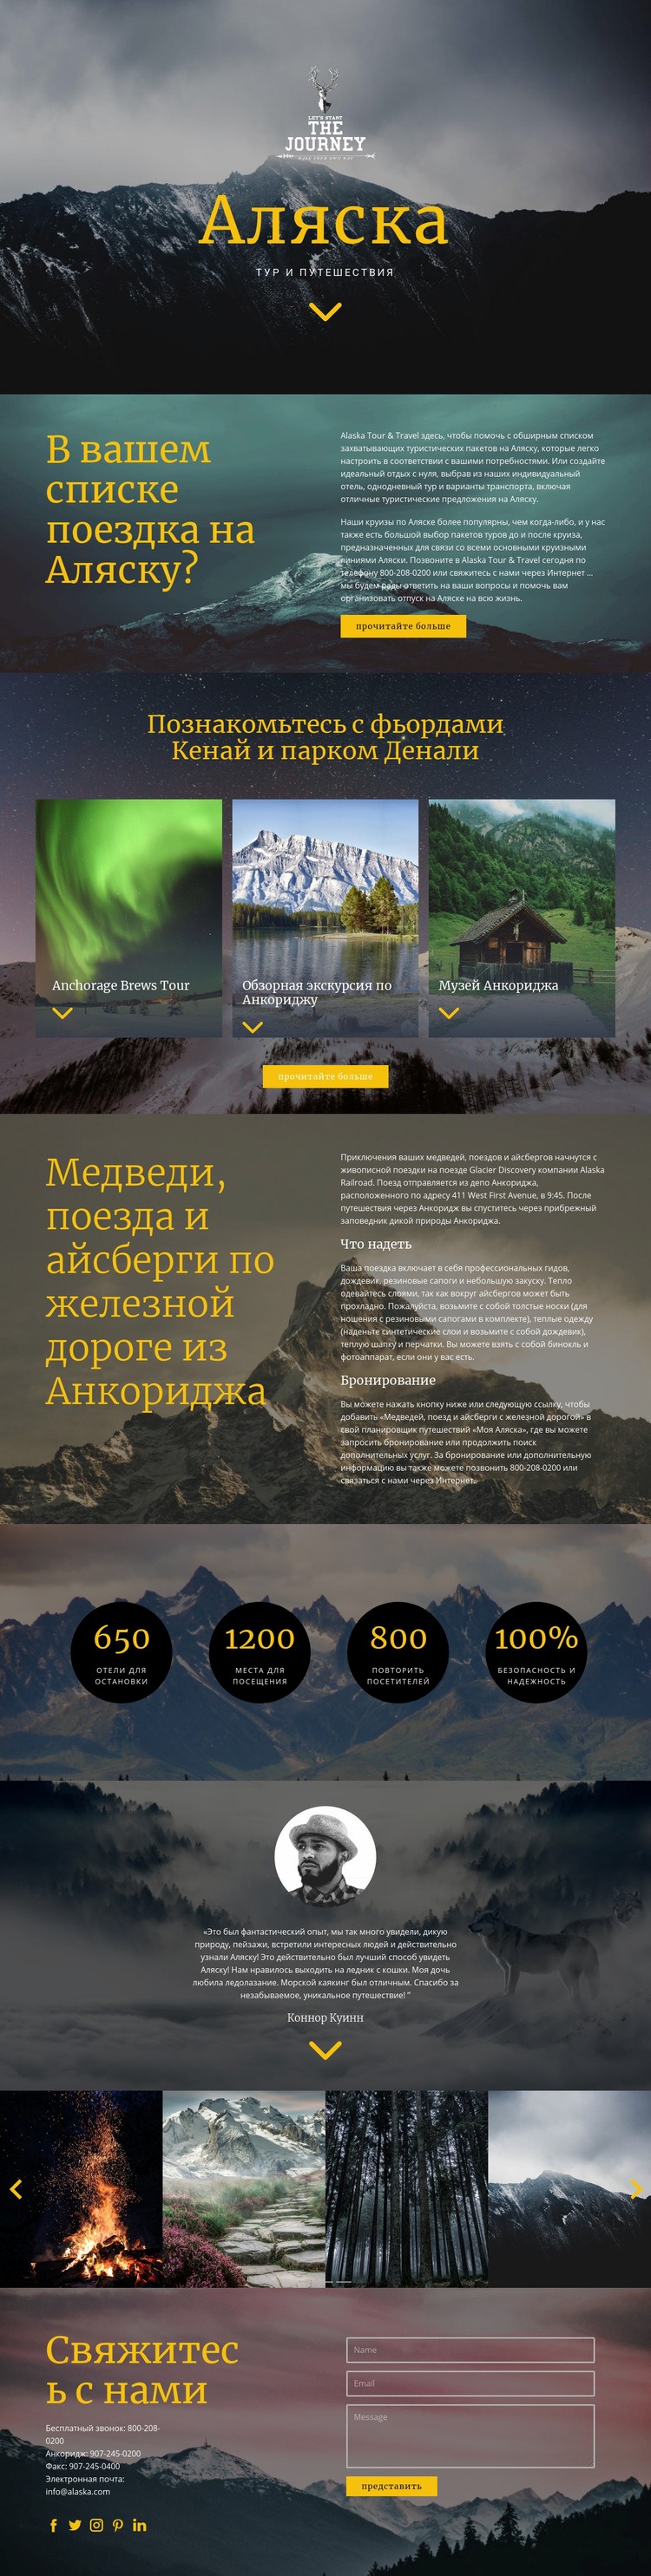 Аляска Путешествие Дизайн сайта